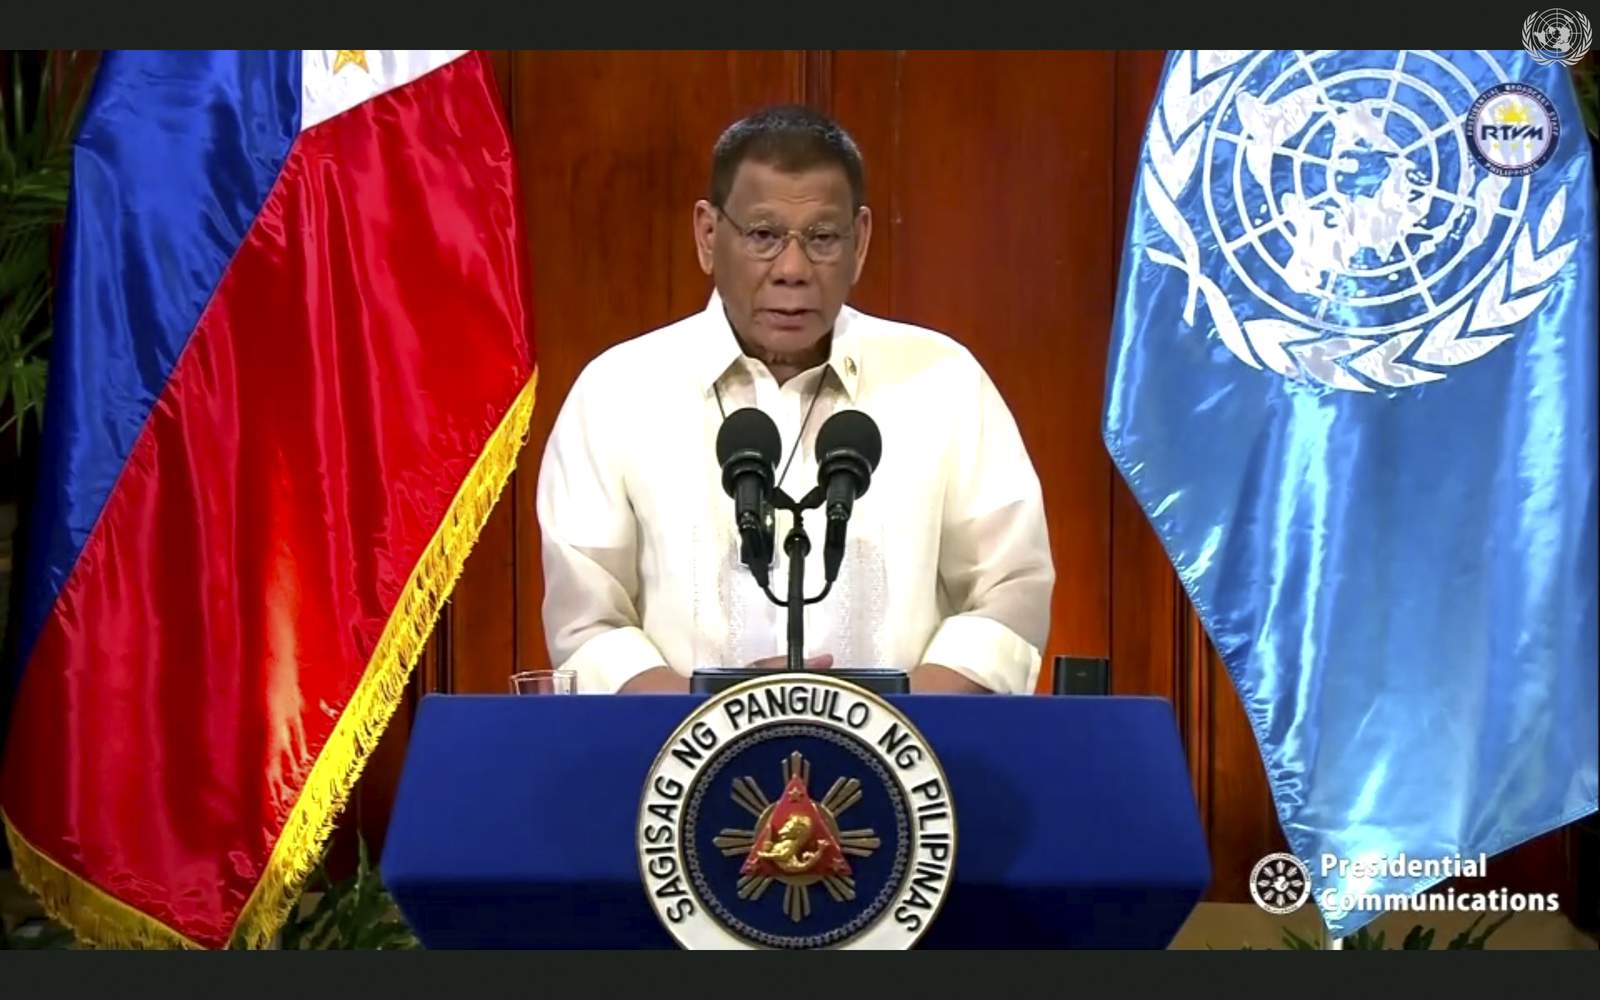 In UN speech, Duterte defends drug war but tempers tone